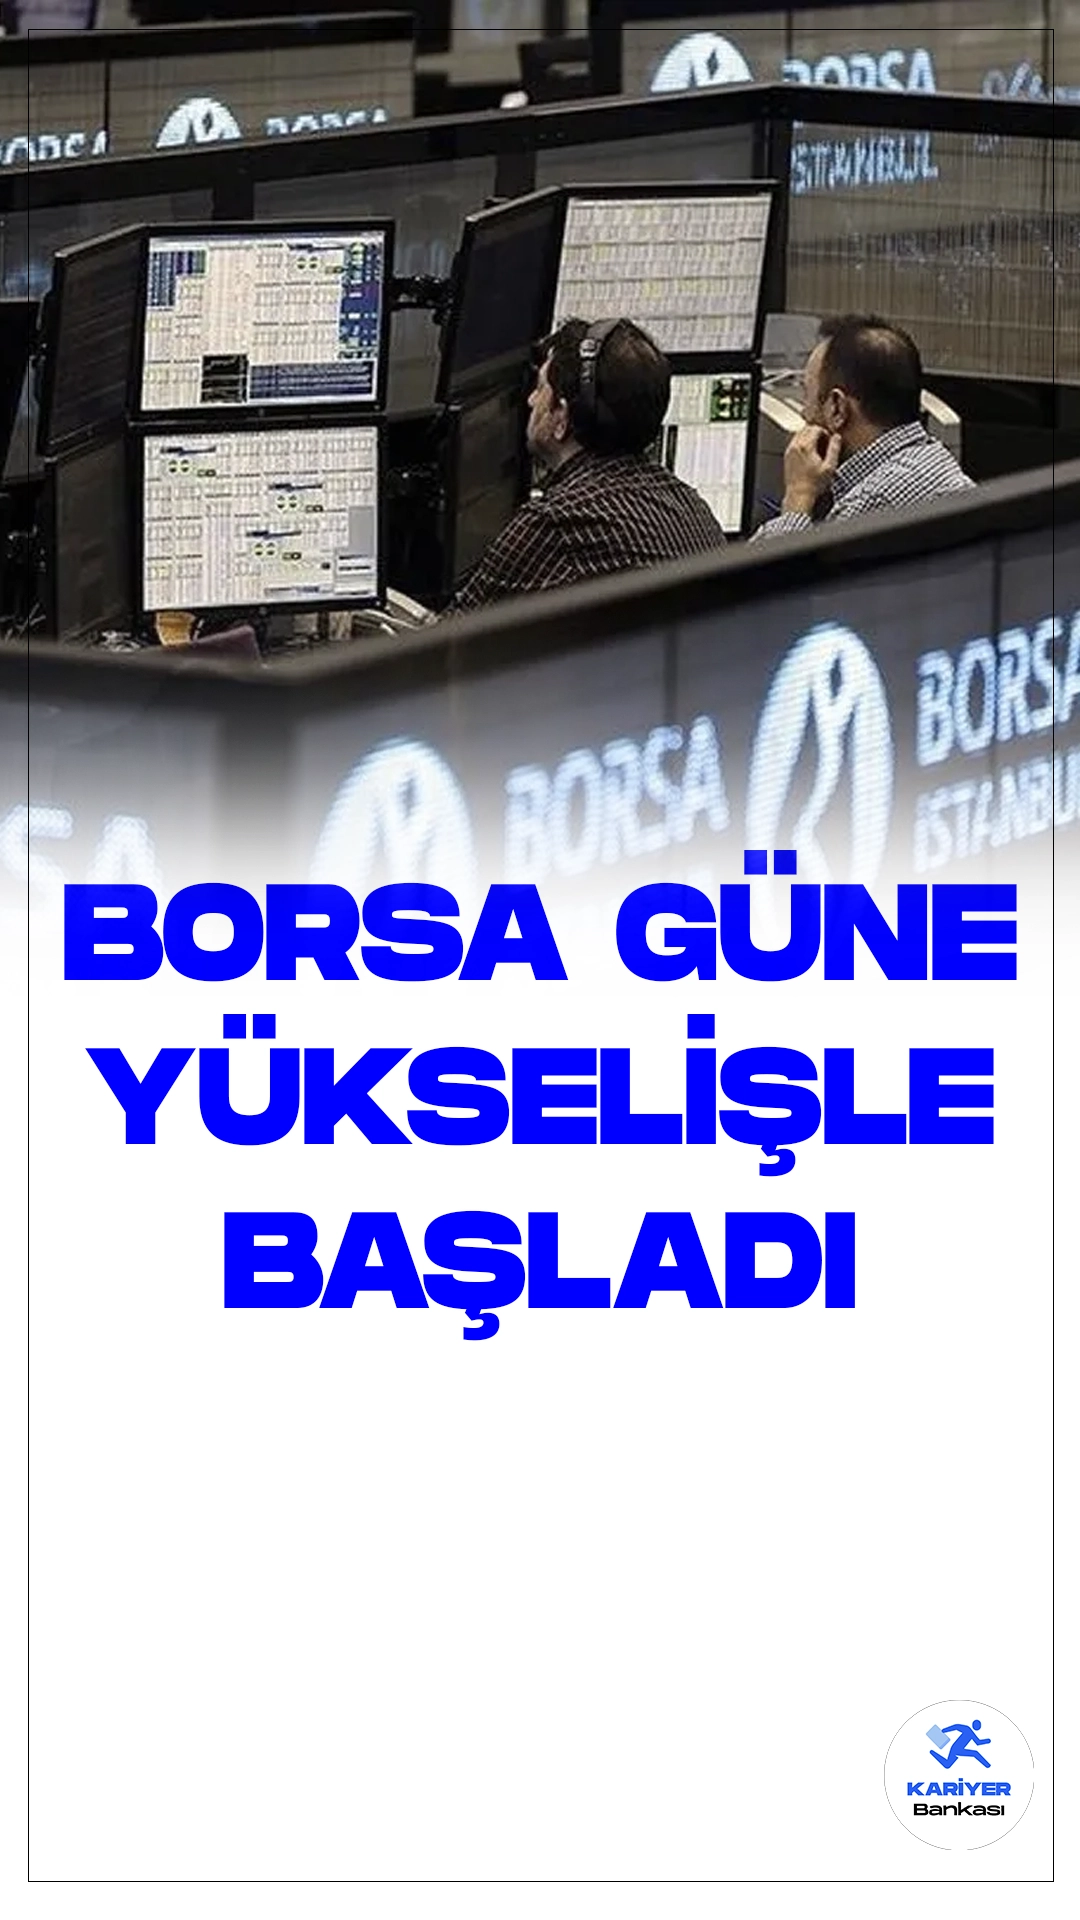 Borsa İstanbul Güne Yükselişle Başladı.Sabah saatlerinde Borsa İstanbul, BIST 100 endeksi ile yüzde 0,42 oranında bir yükselişle 9.100,27 puandan başladı. Güne başlarken endeks, önceki kapanışın üzerine 37,91 puan ekleyerek değer kazandı.